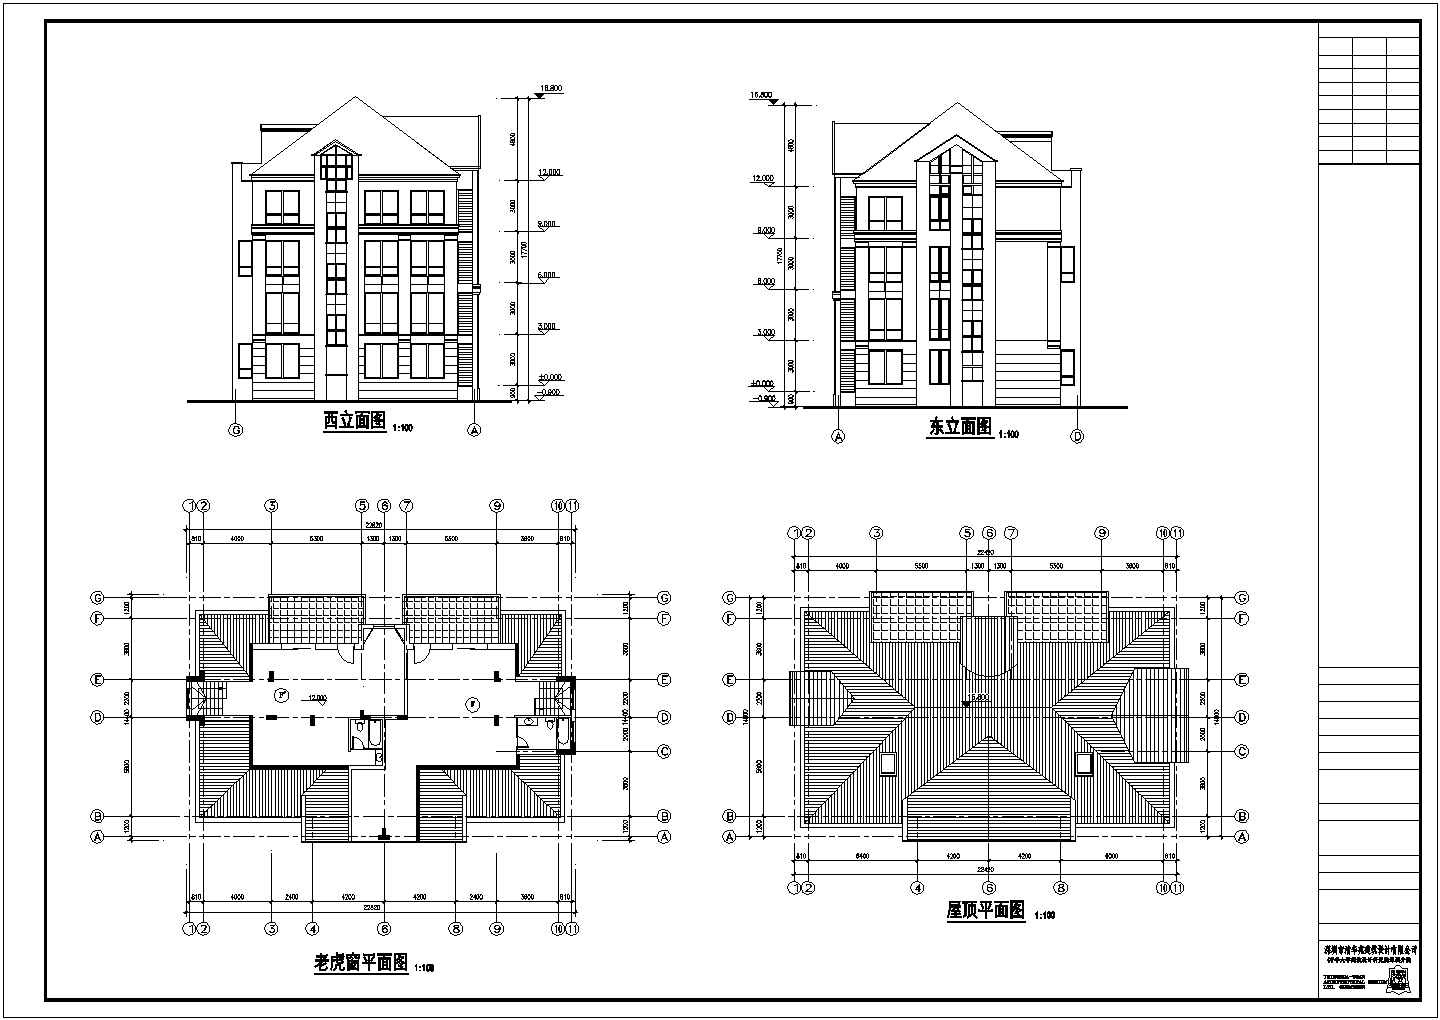 常州市某社区内部4层简约型别墅建筑设计CAD图纸